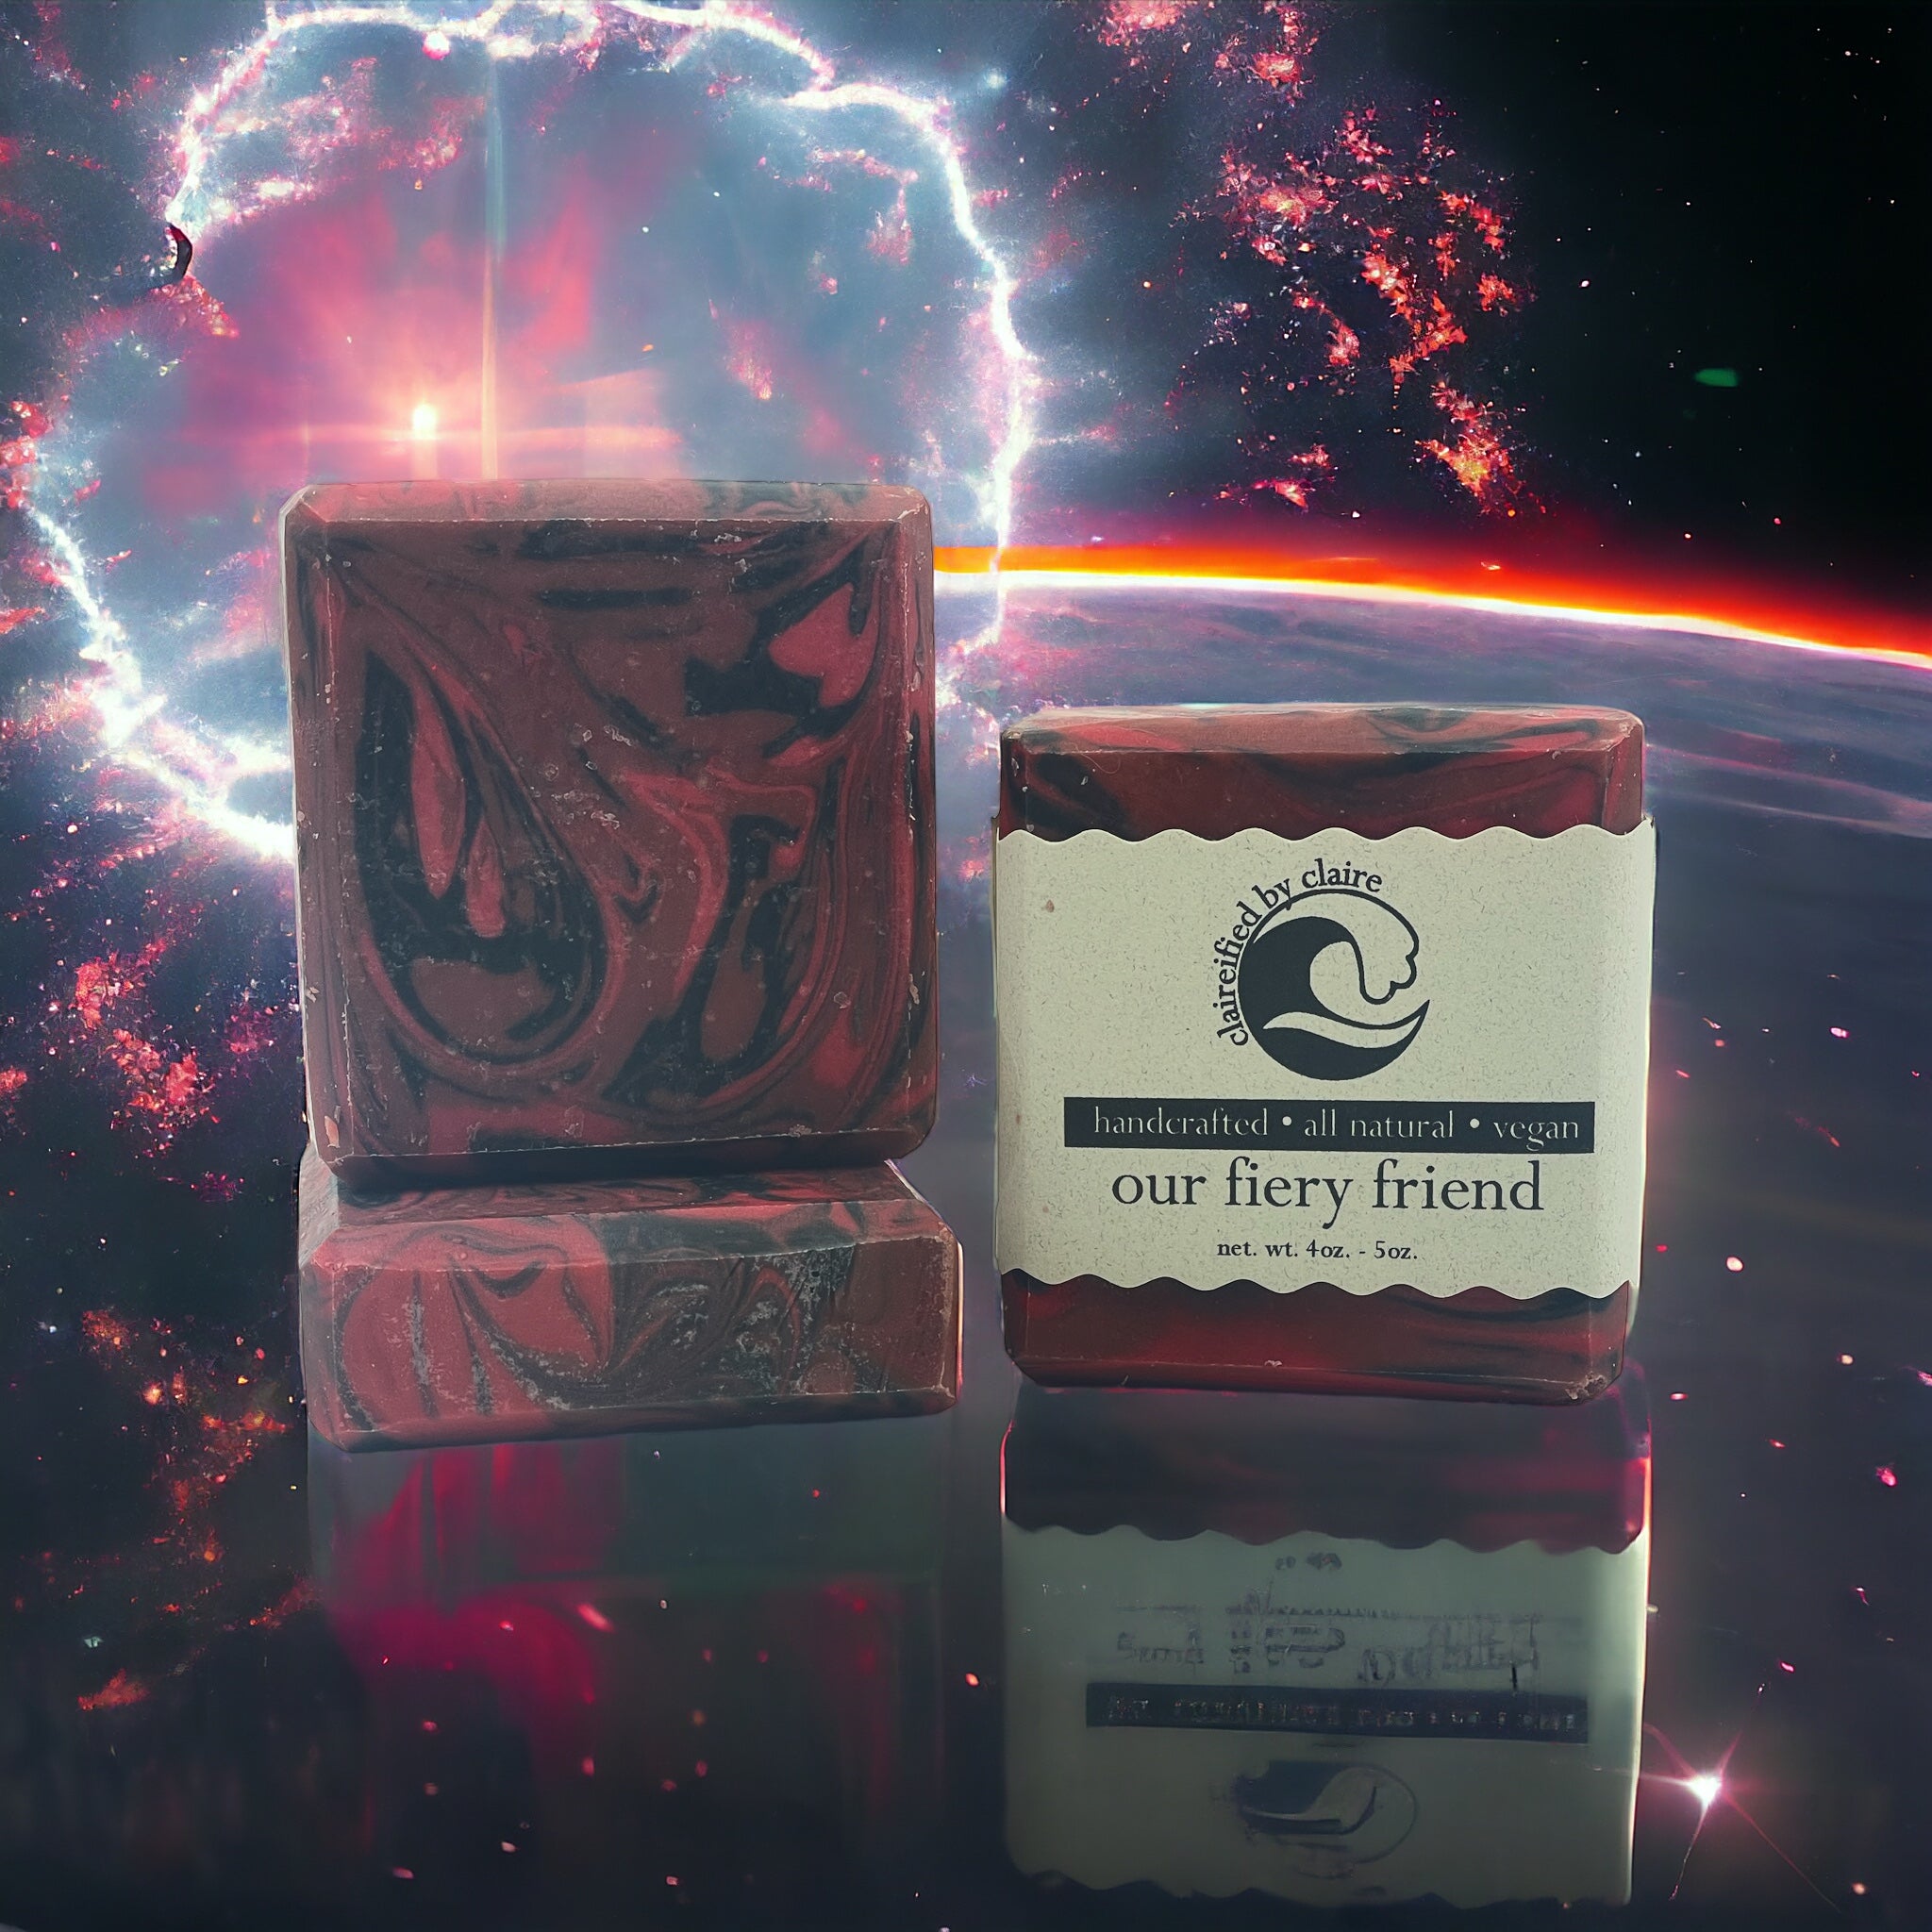 Our Fiery Friend: Karlach - Baldur's Gate 3 inspired handmade soap